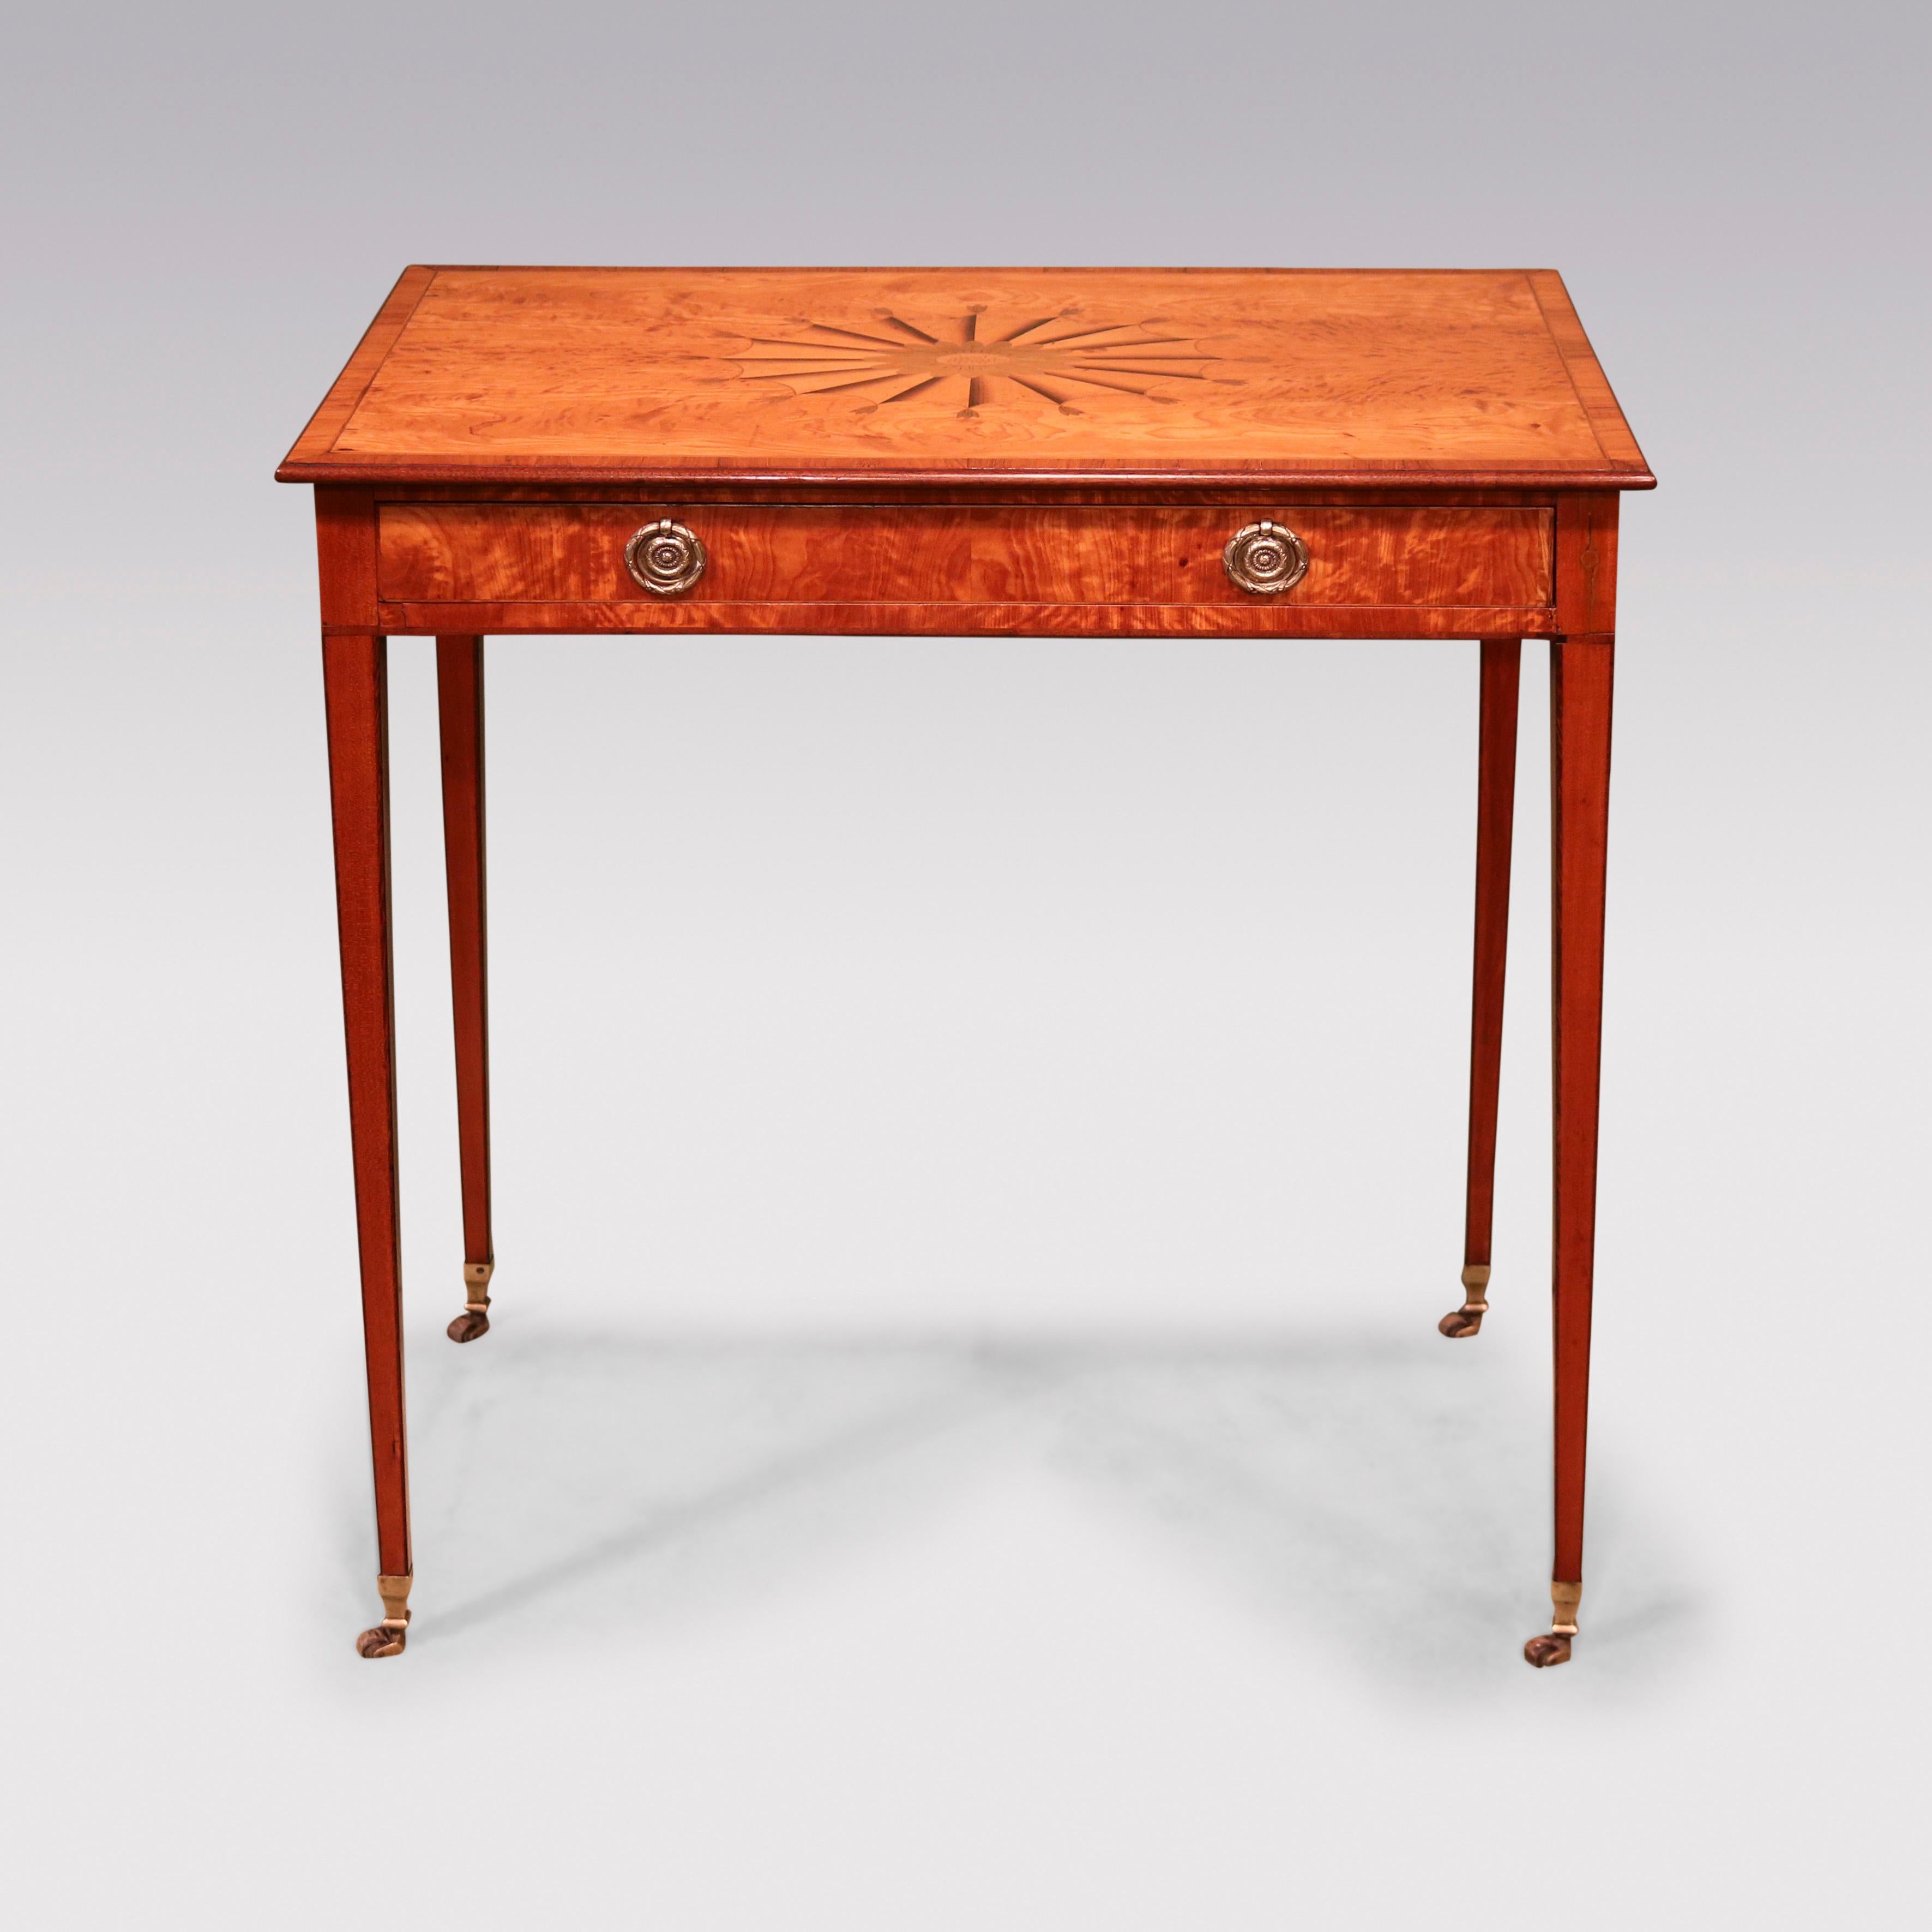 Une belle table d'appoint de qualité de la fin du 18ème siècle, en bois de satin à un tiroir, avec poignées d'origine, buis et bois d'ébène tout au long, ayant un dessus rectangulaire en bois de tulipe avec un panneau central décoré d'un éventail en